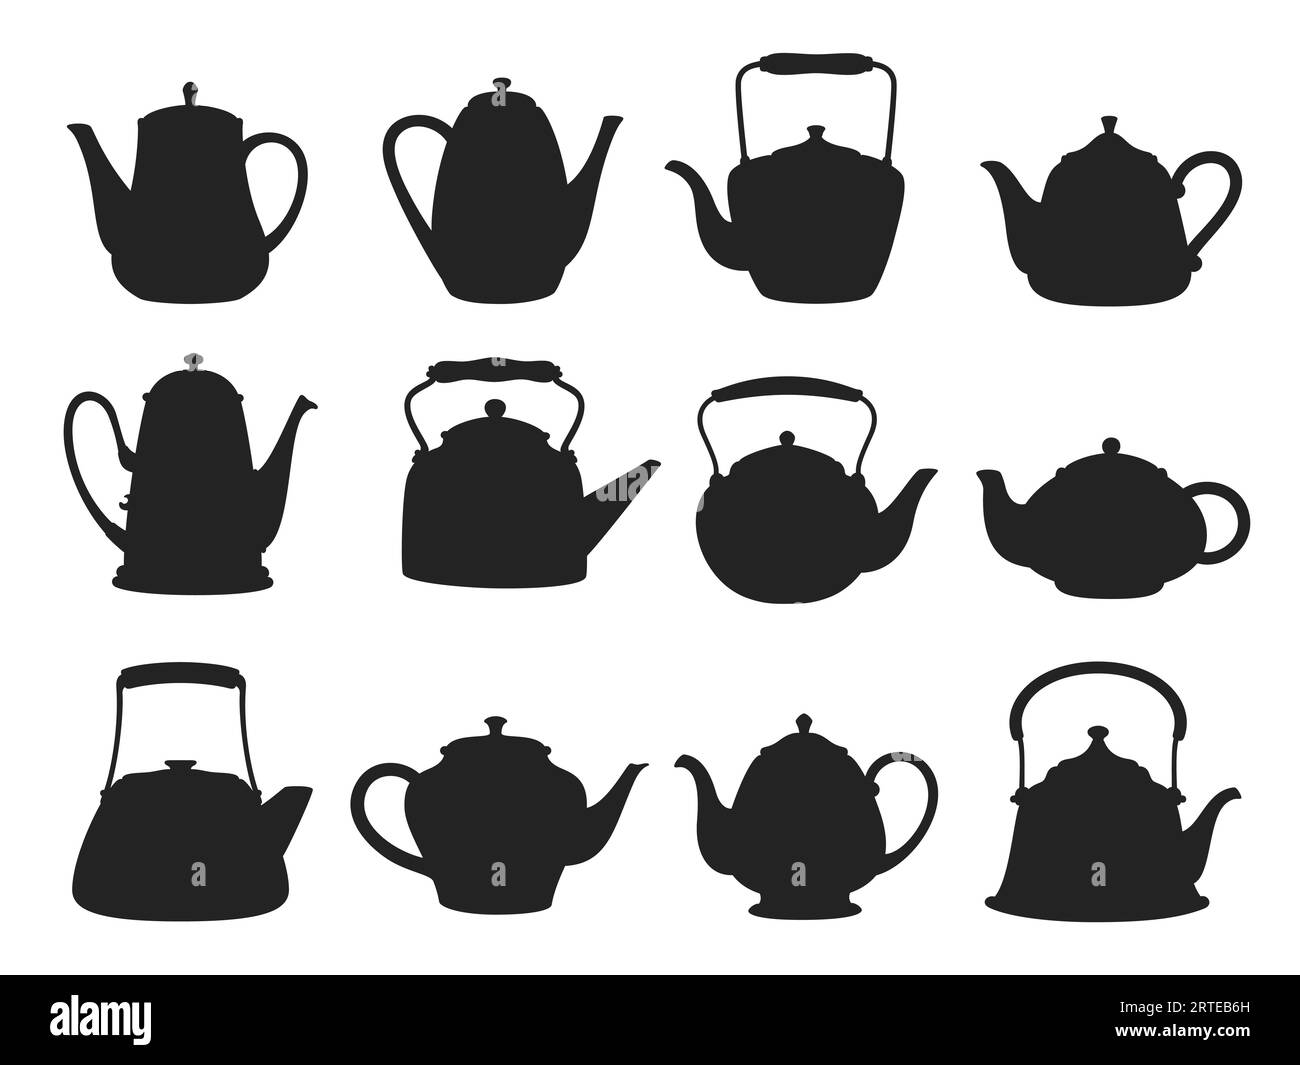 Silhouetten aus Keramik für Teekanne und Wasserkocher. Vector Küchengeschirr, schwarzer Kaffee oder Teekannen für heiße Getränke oder Getränke. Isoliertes Set aus Retro-Geschirr, handgemachten Töpferwaren oder Vintage-Haushaltsutensilien Stock Vektor